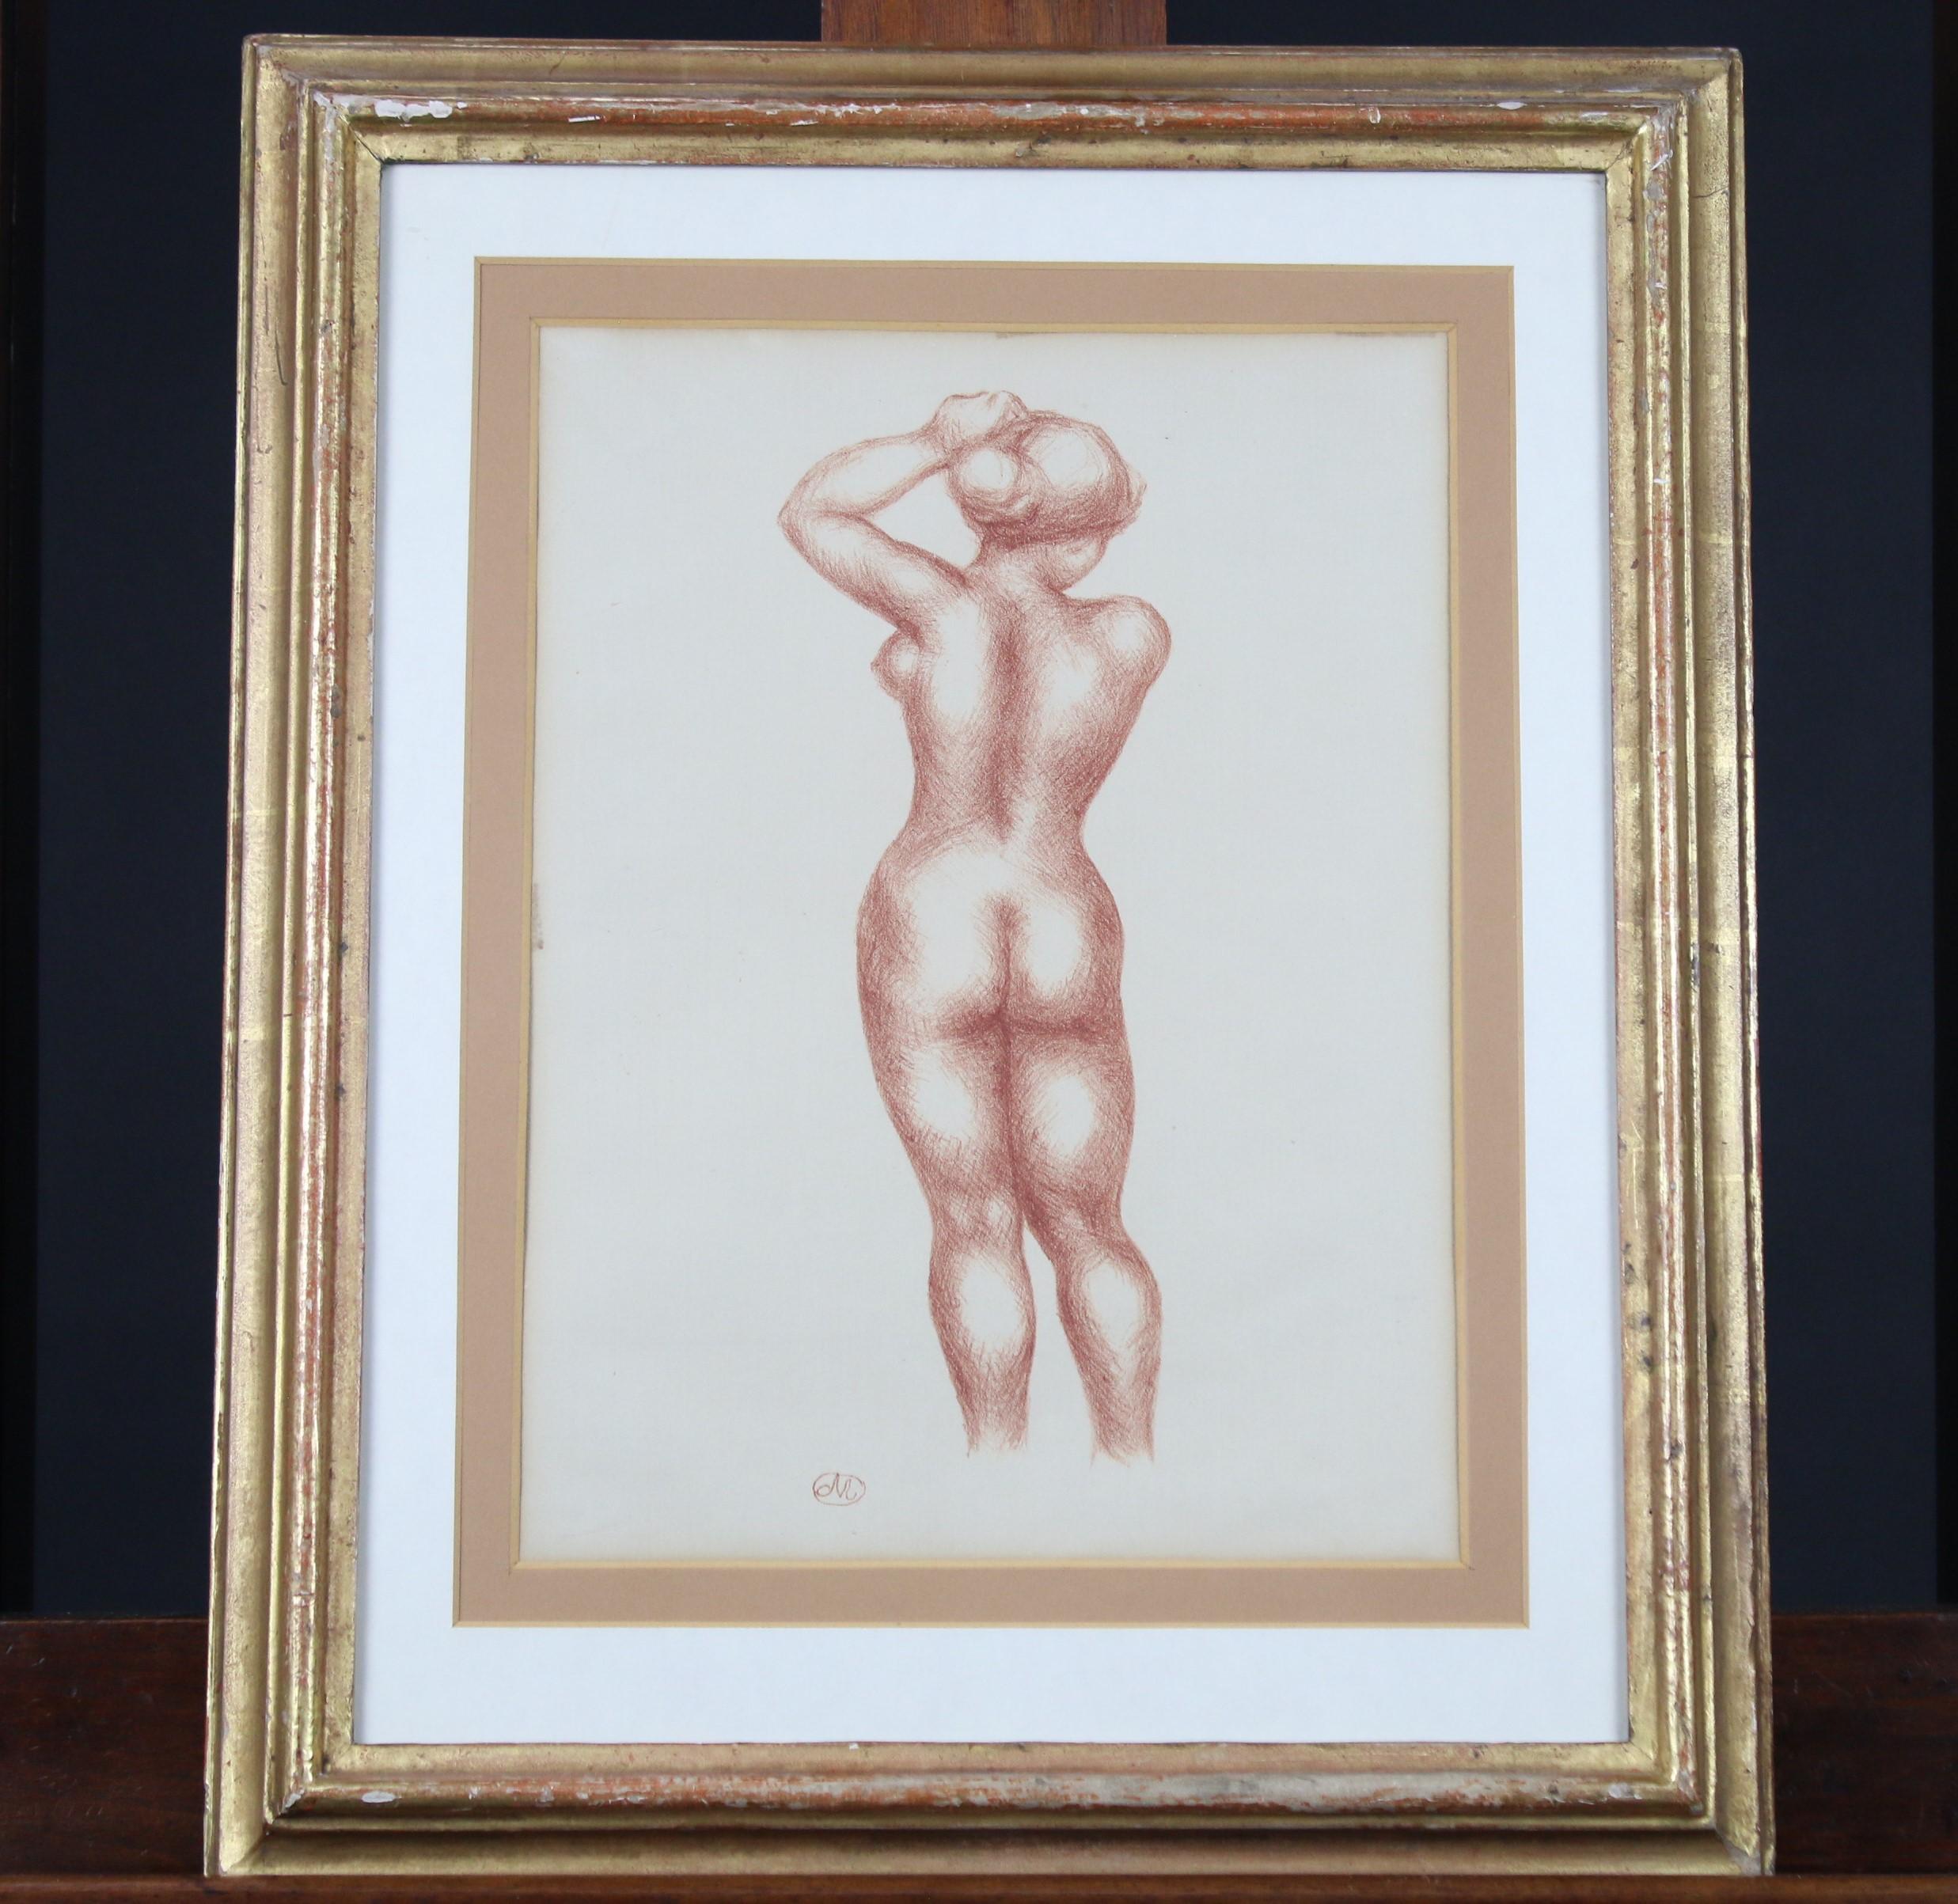 Stehender weiblicher Akt von hinten aus der Mappe von Aristide Maillol: Bildhauerei und Lithographie, 1925. Originaler Rahmen.
